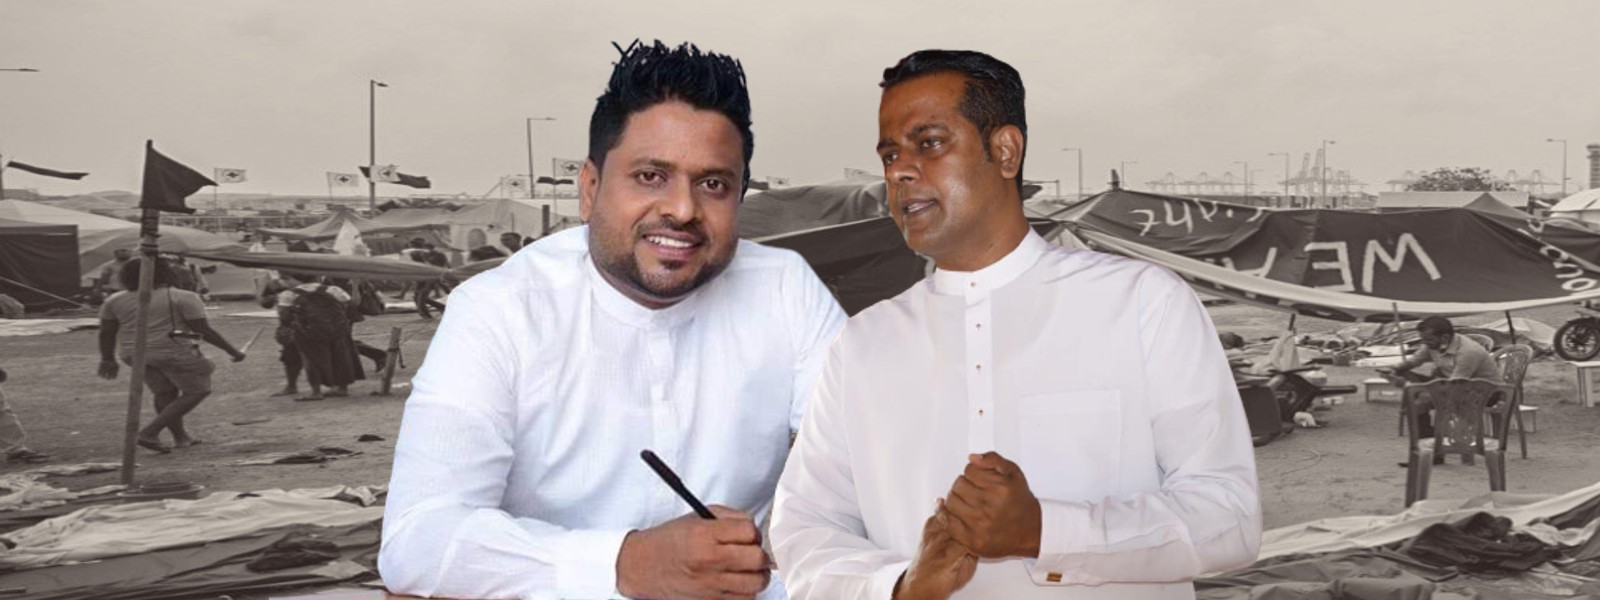 SLPP MPs Sanath Nishantha & Milan Jayathilake, remanded